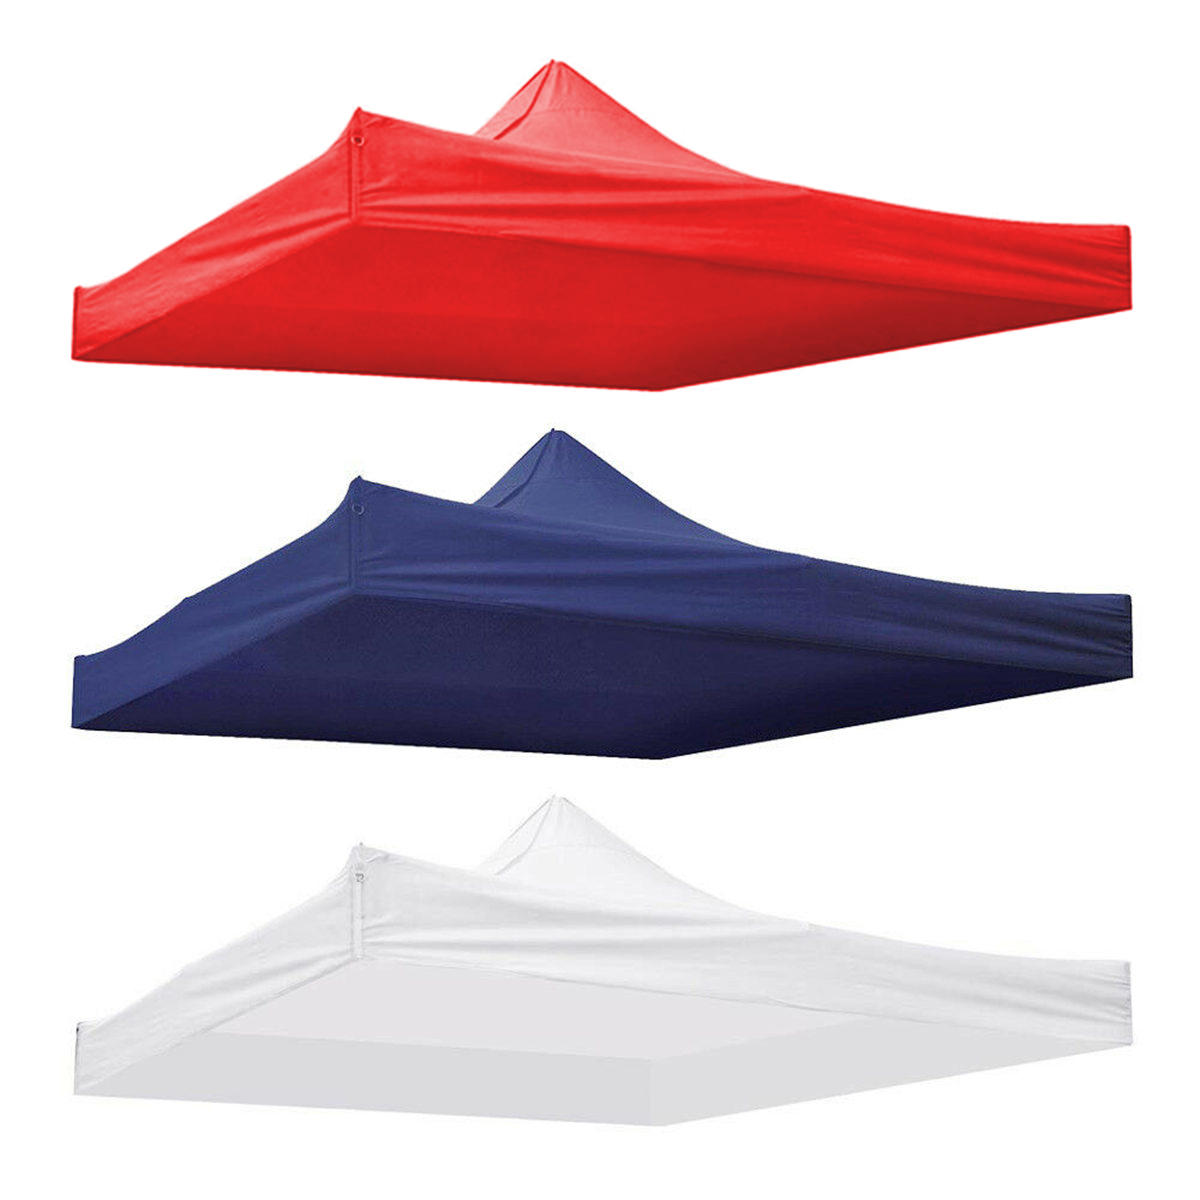 Cobertura superior impermeável de substituição para tenda de pátio ou gazebo de 9,5x9,5 pés em tecido 420D com proteção UV.